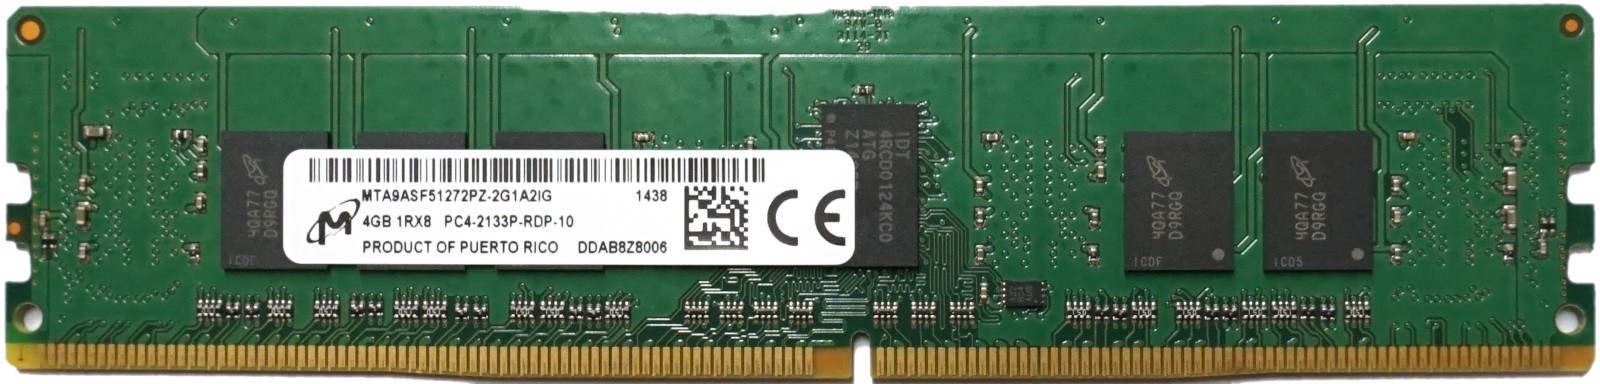 Micron - 4GB PC4-17000P-R (DDR4-2133Mhz, 1RX8)